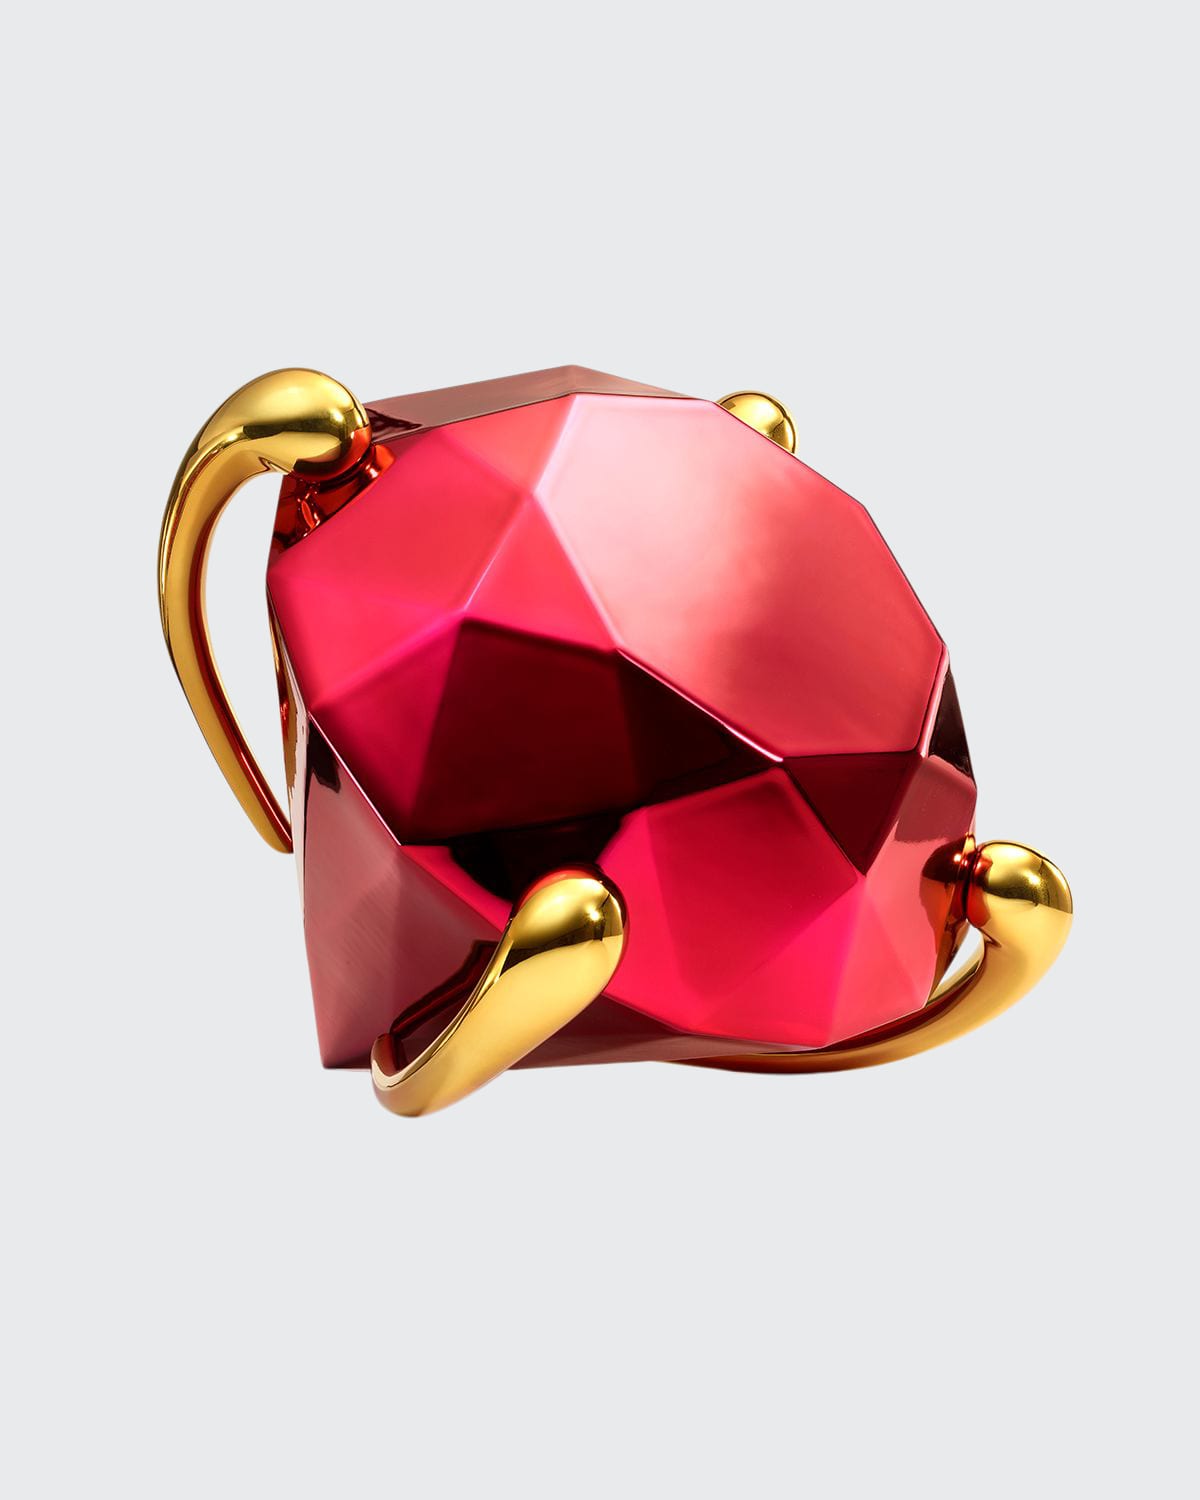 Diamond (Red),2020